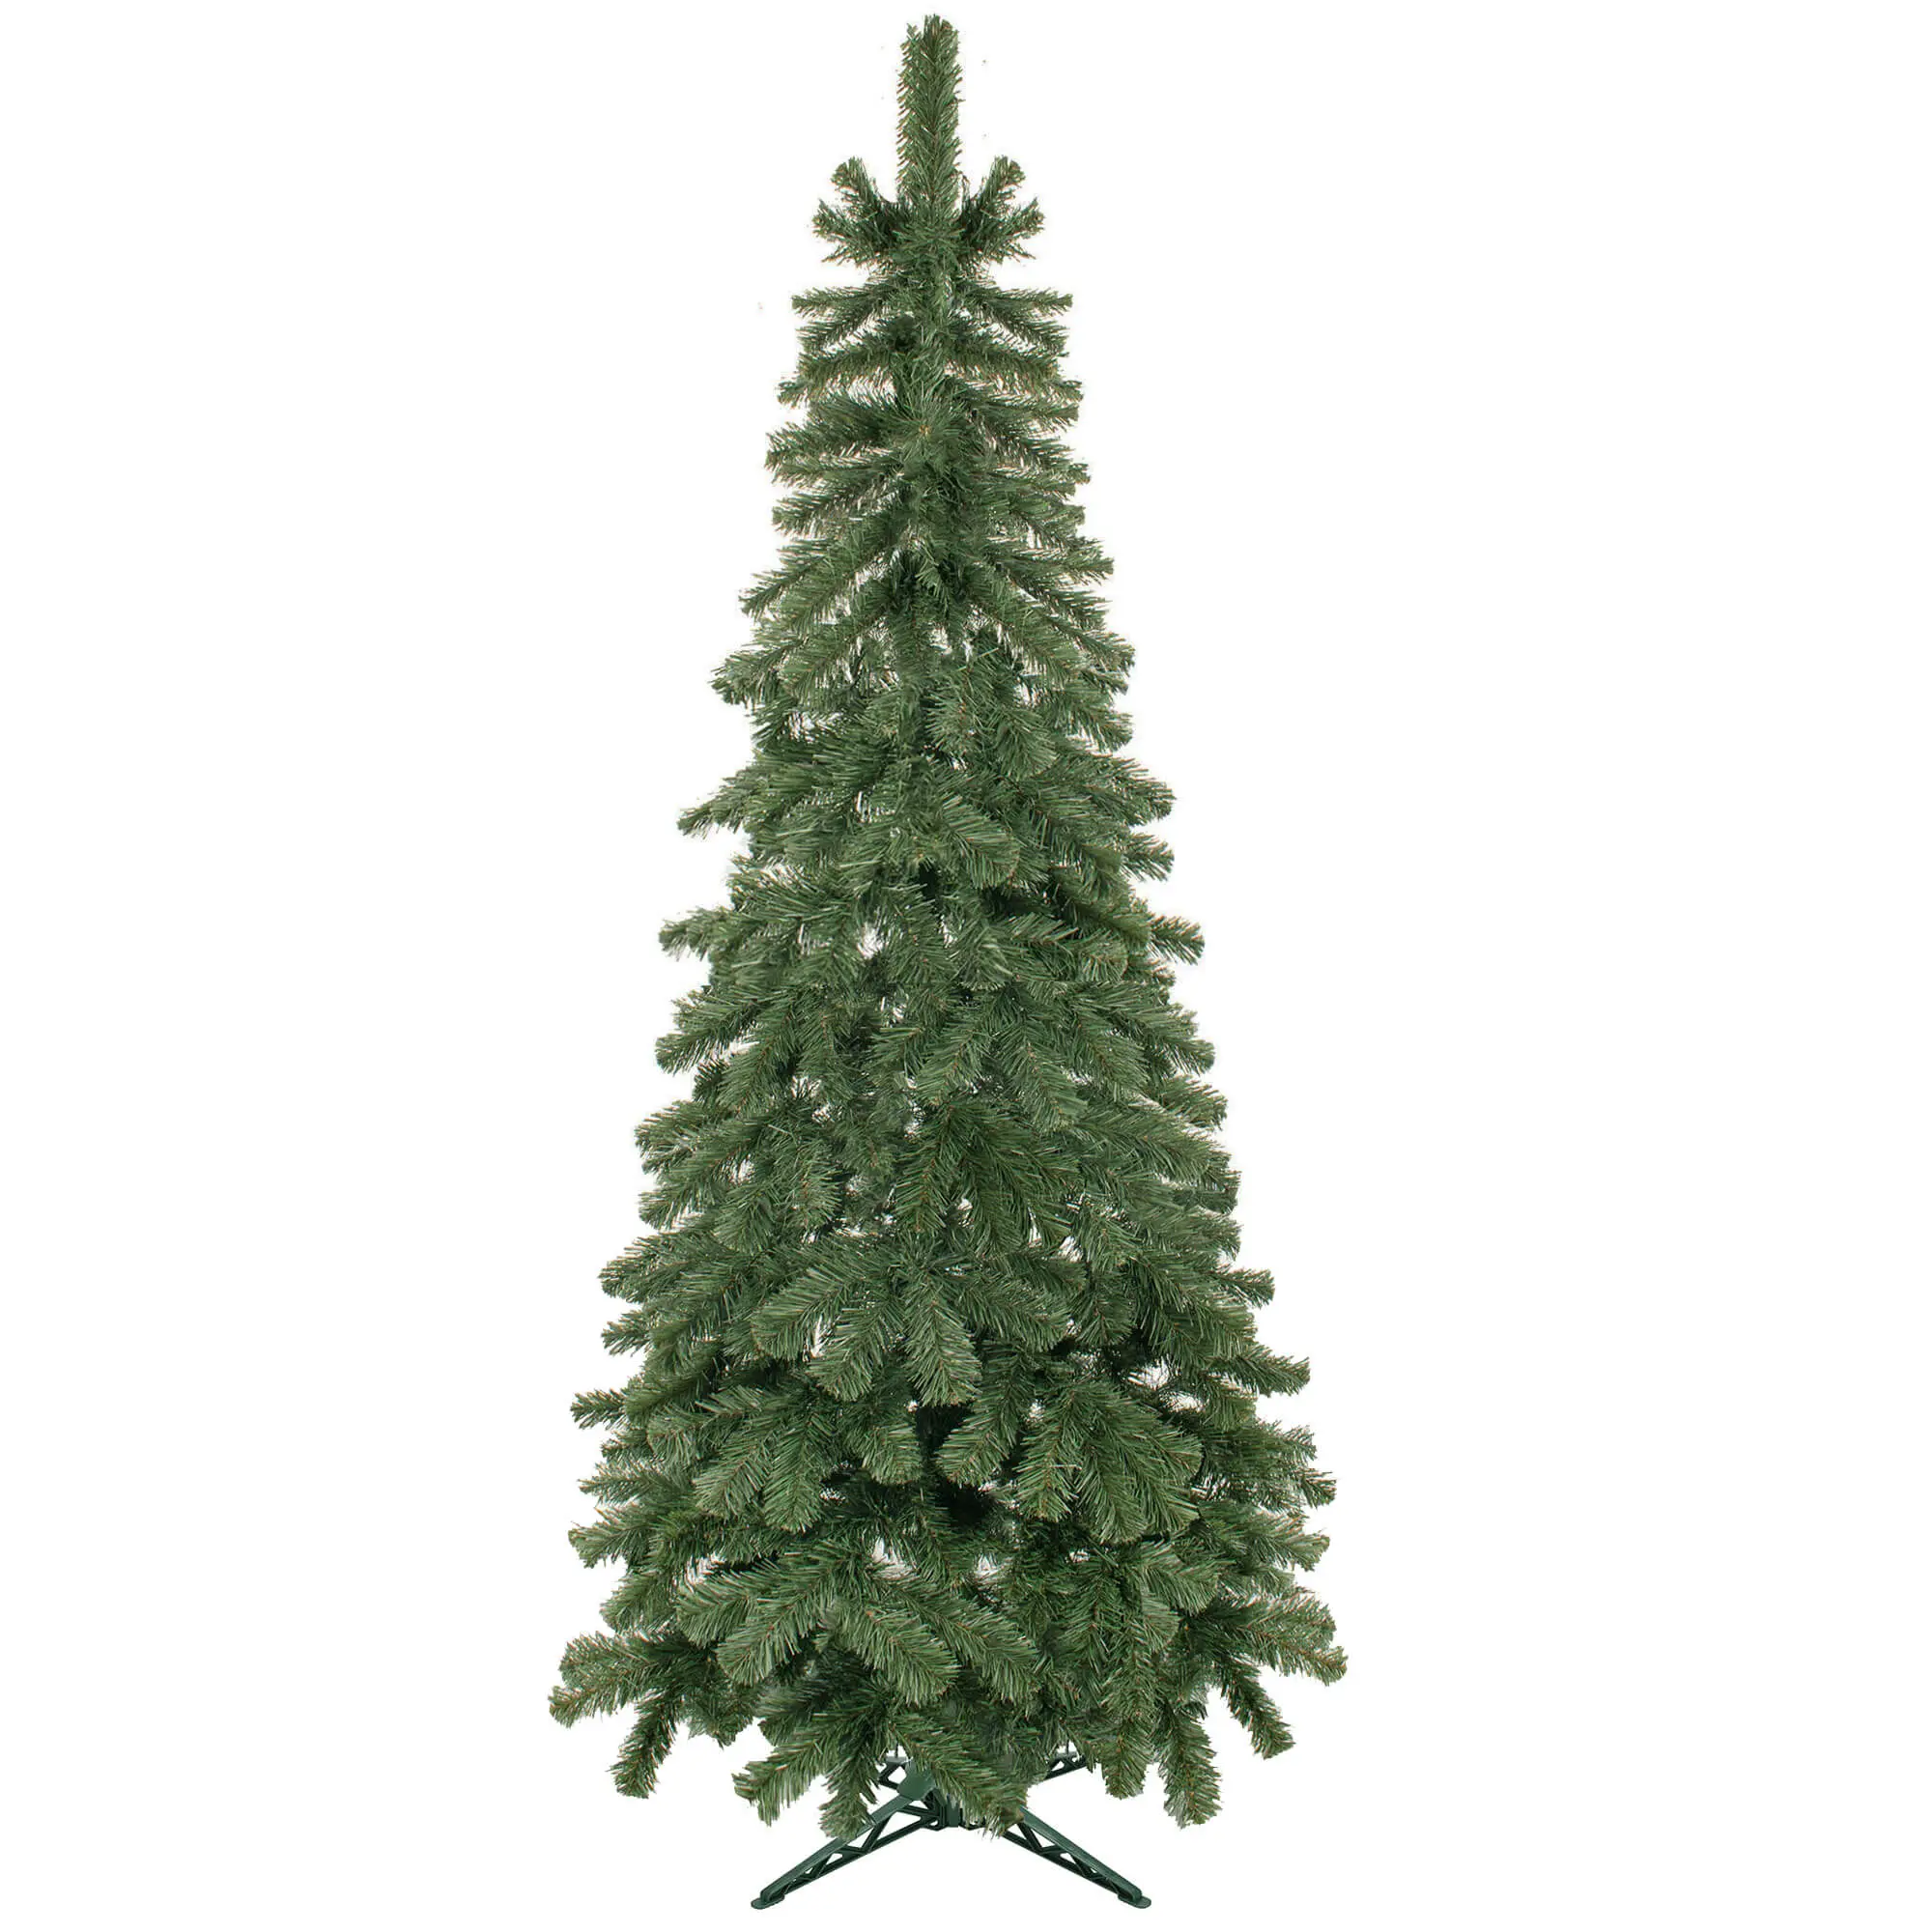 cm K眉nstlicher Weihnachtsbaum 180